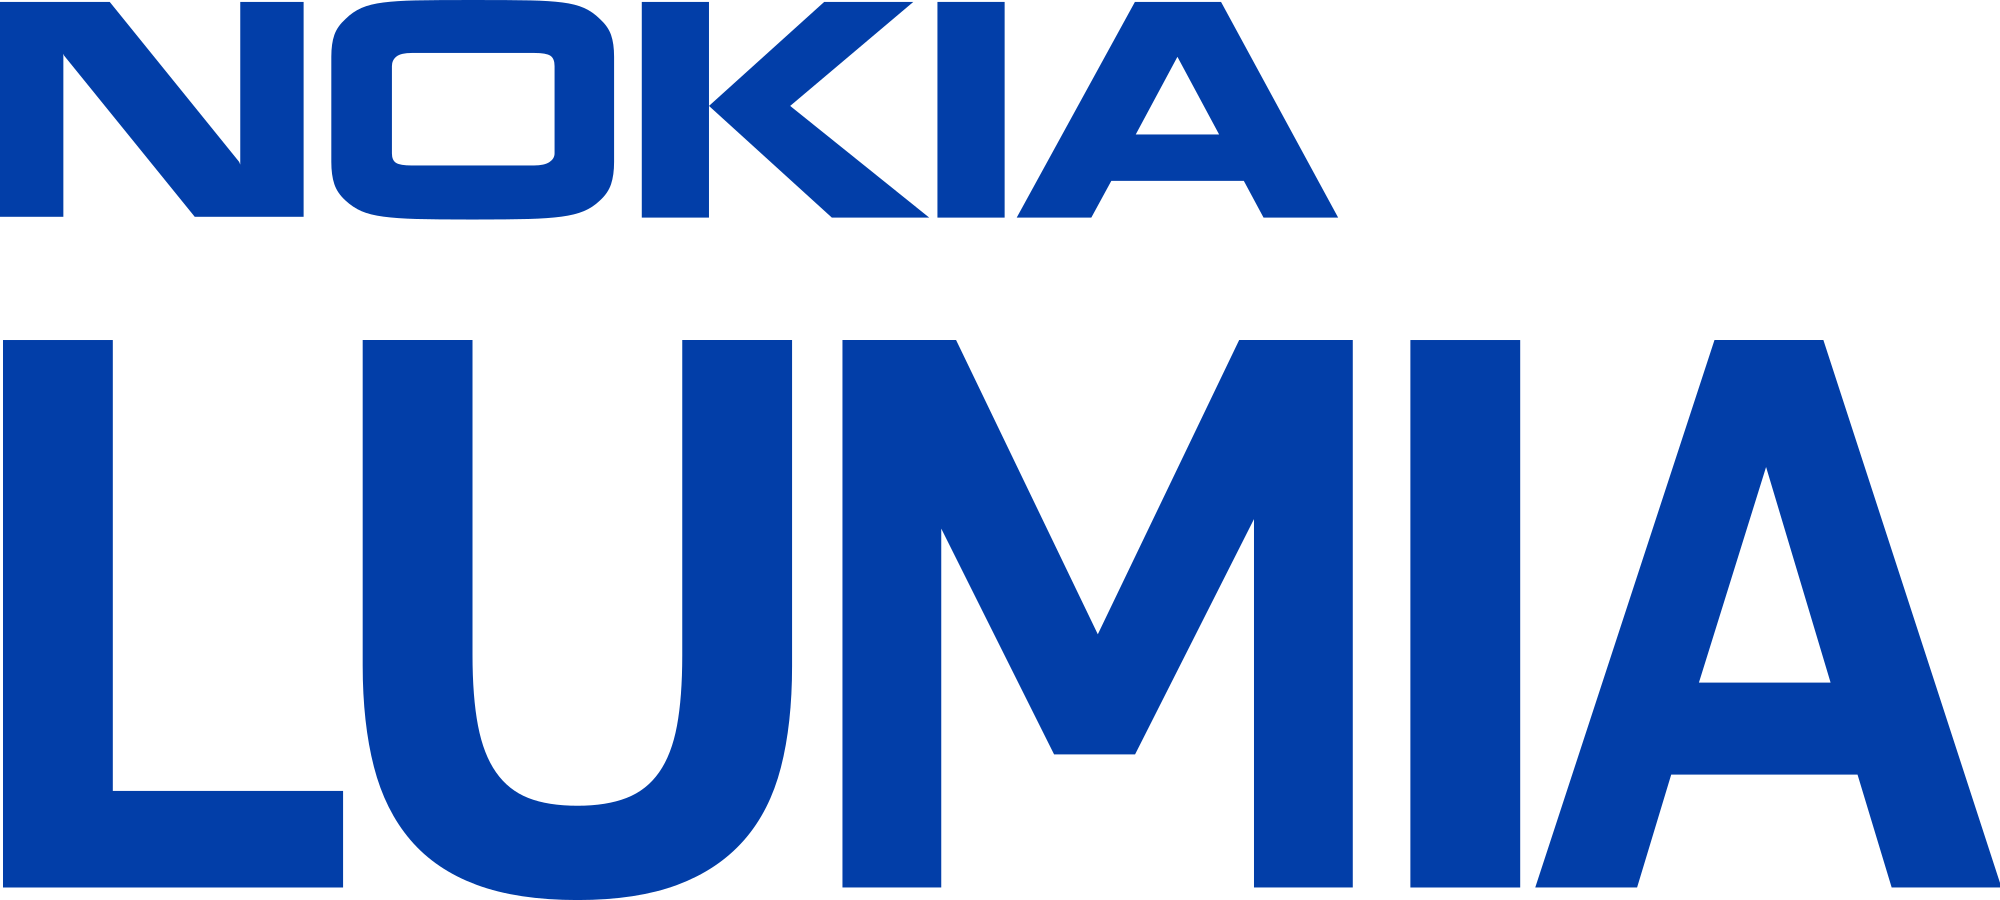 Nokia Logo - File:Nokia Lumia logo.svg - Wikimedia Commons